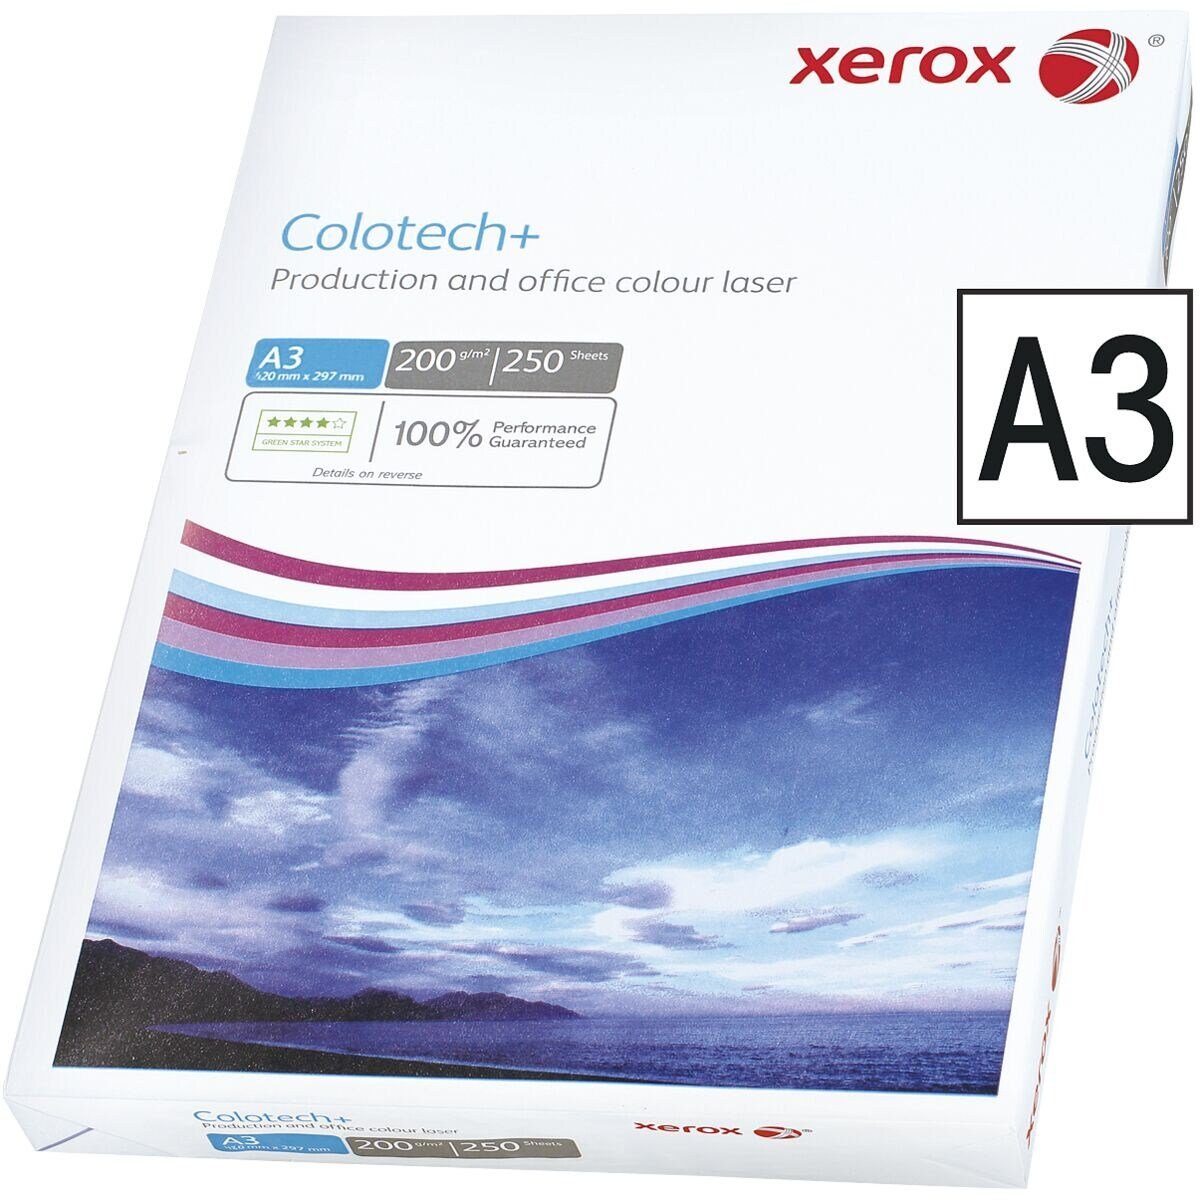 Xerox Farblaser-Druckerpapier Colotech+, 250 g/m², Format DIN Blatt 200 A3